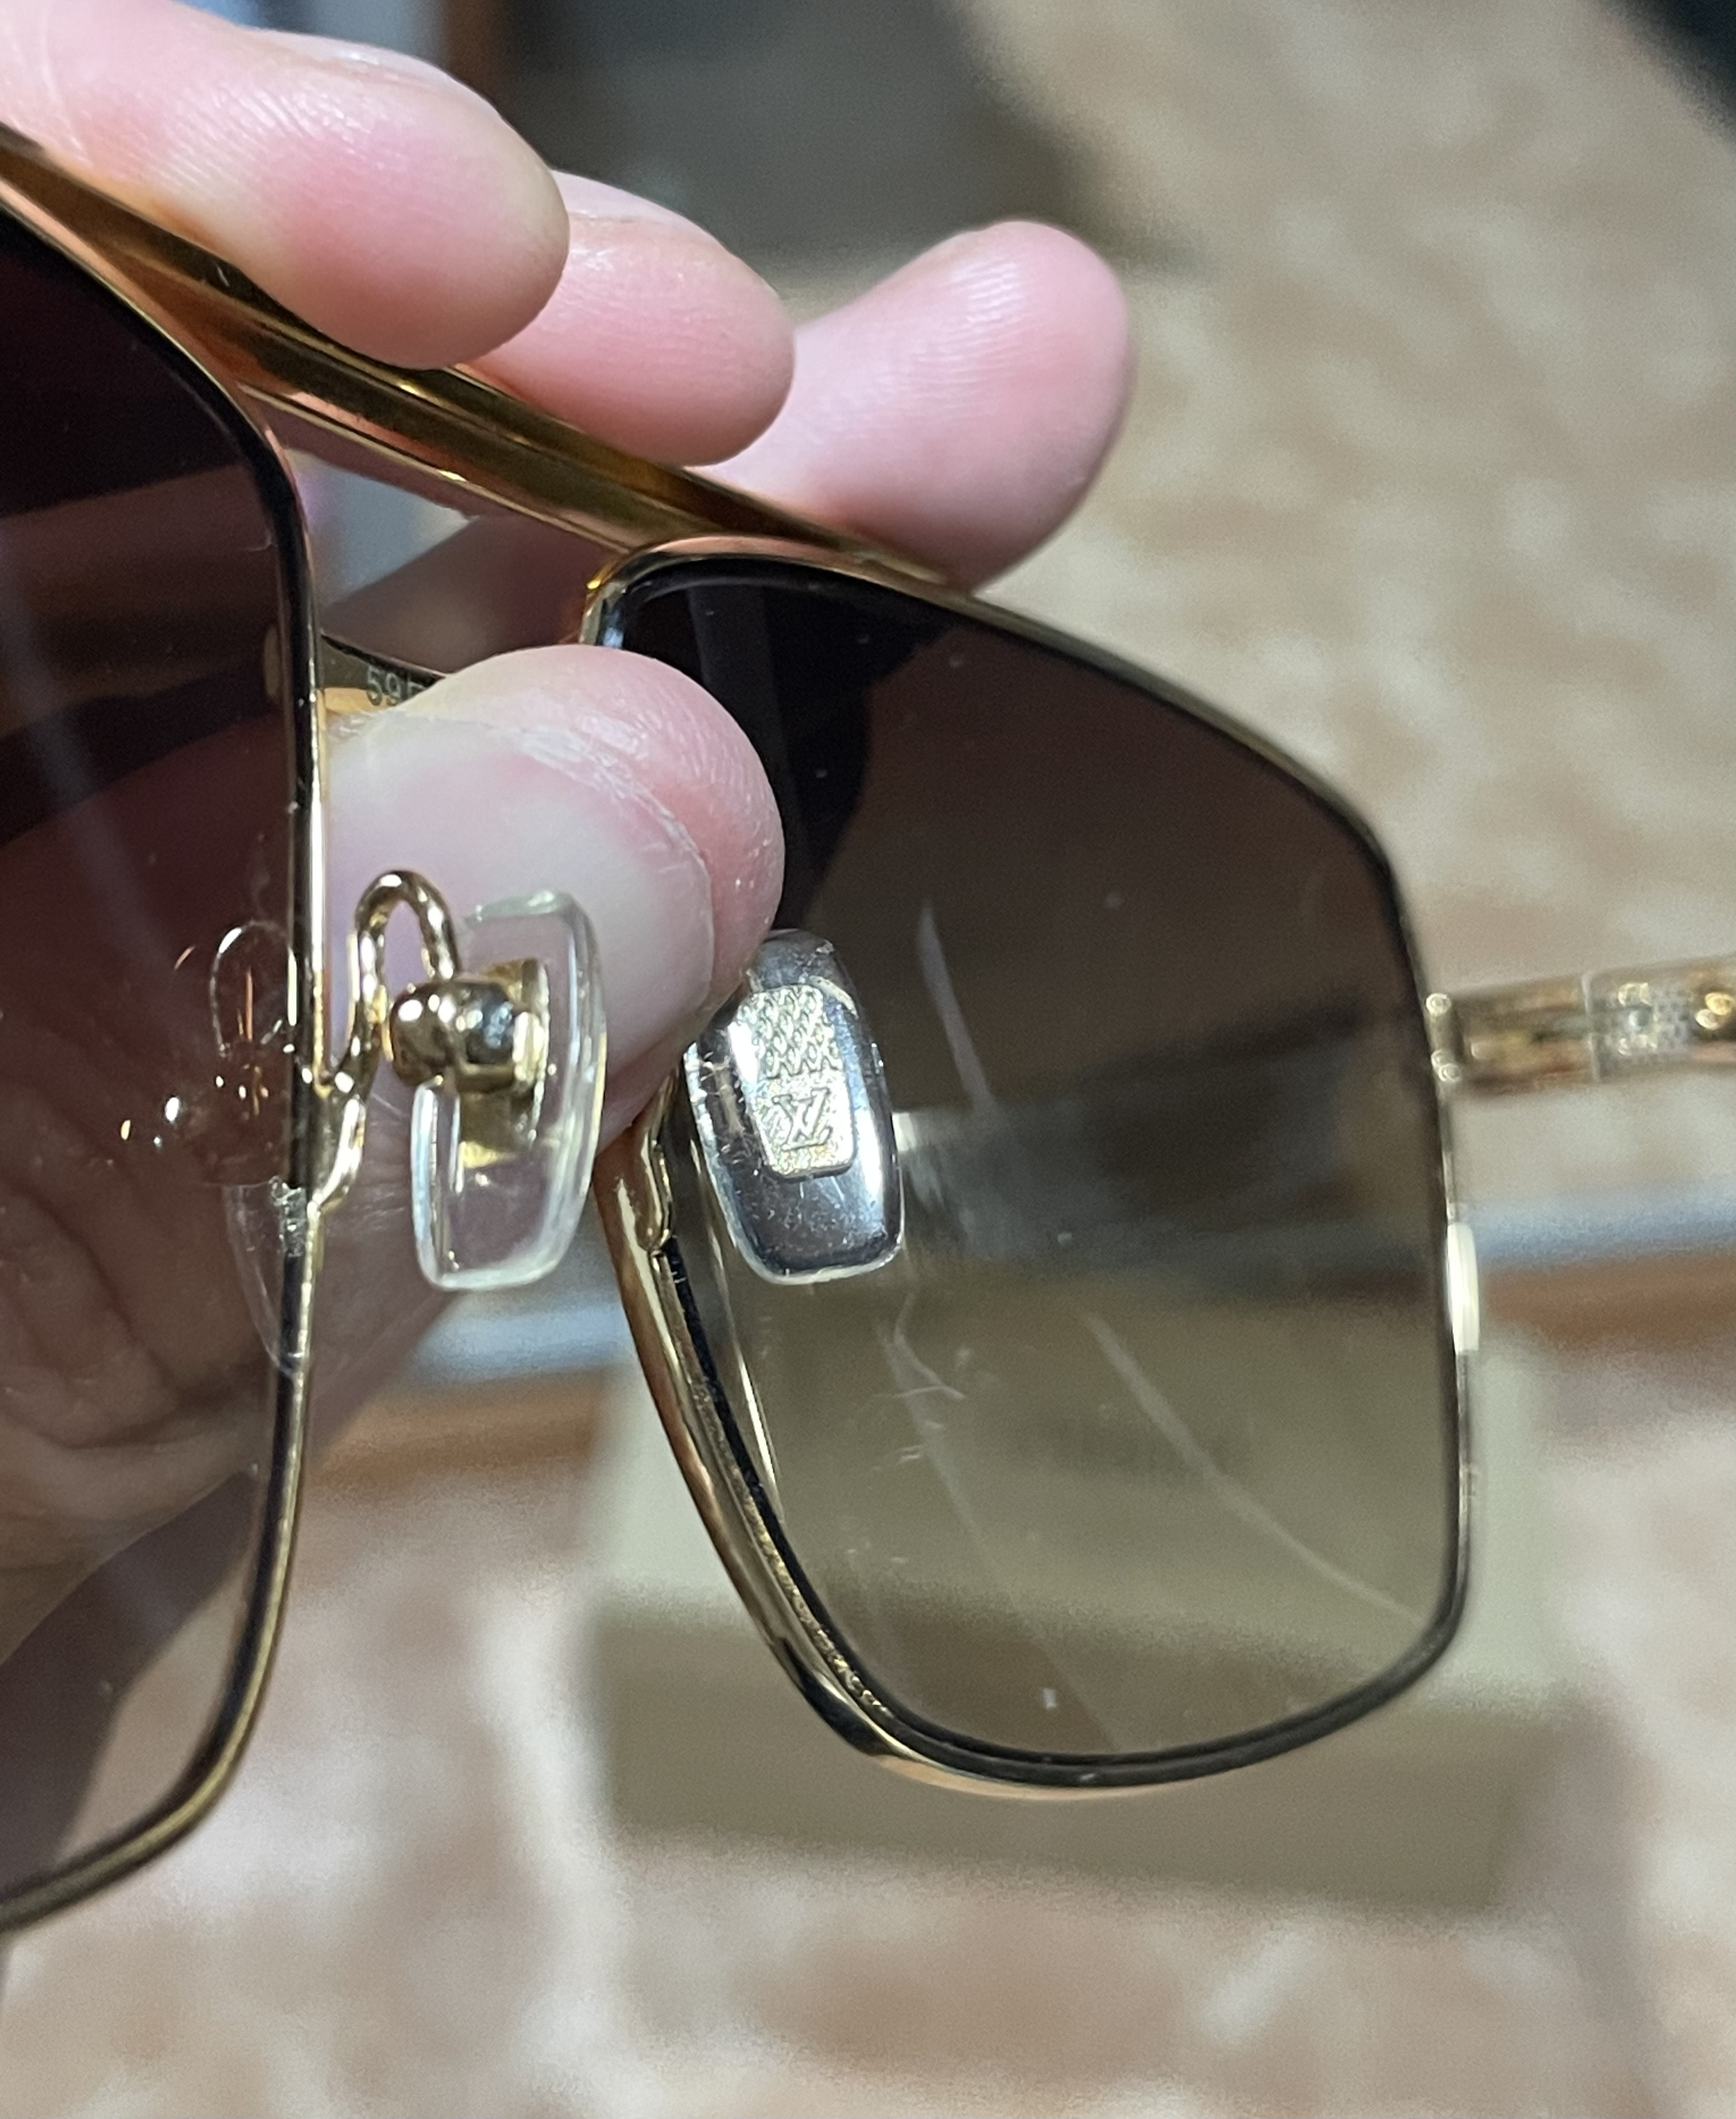 Replica Louis Vuitton Attitude Pilote Sunglasses Z0259U Fake From